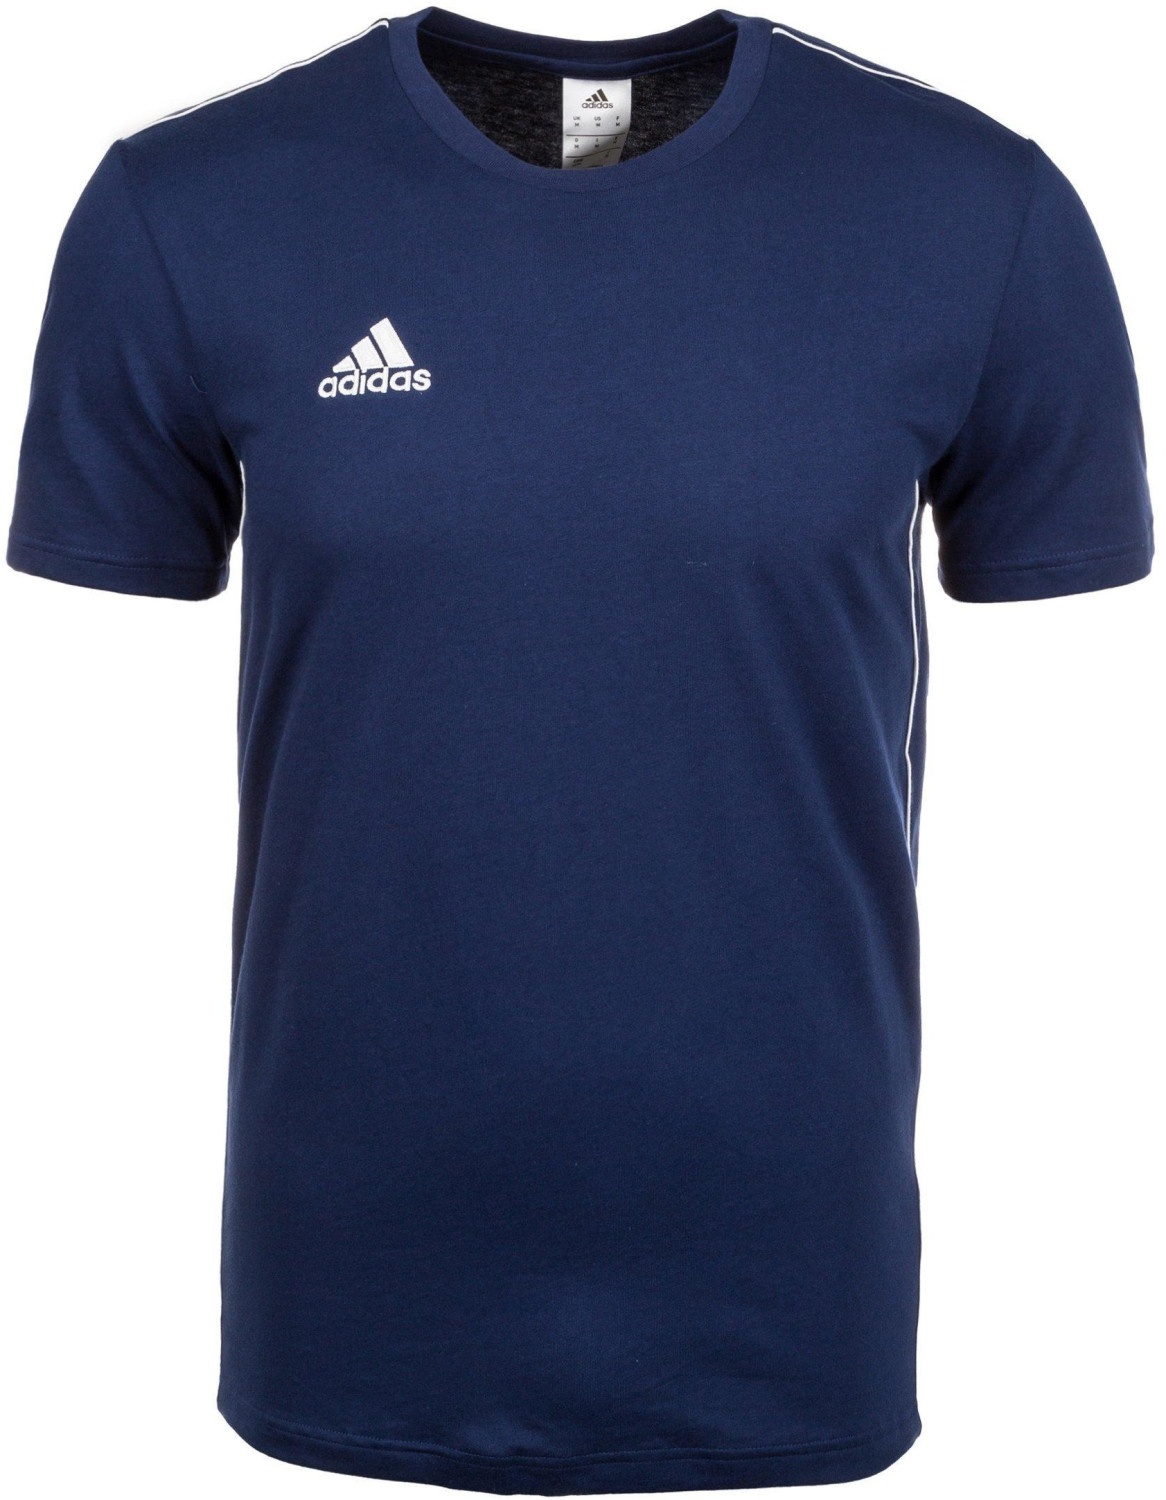 Adidas Core 18 Shirt dark blue/white